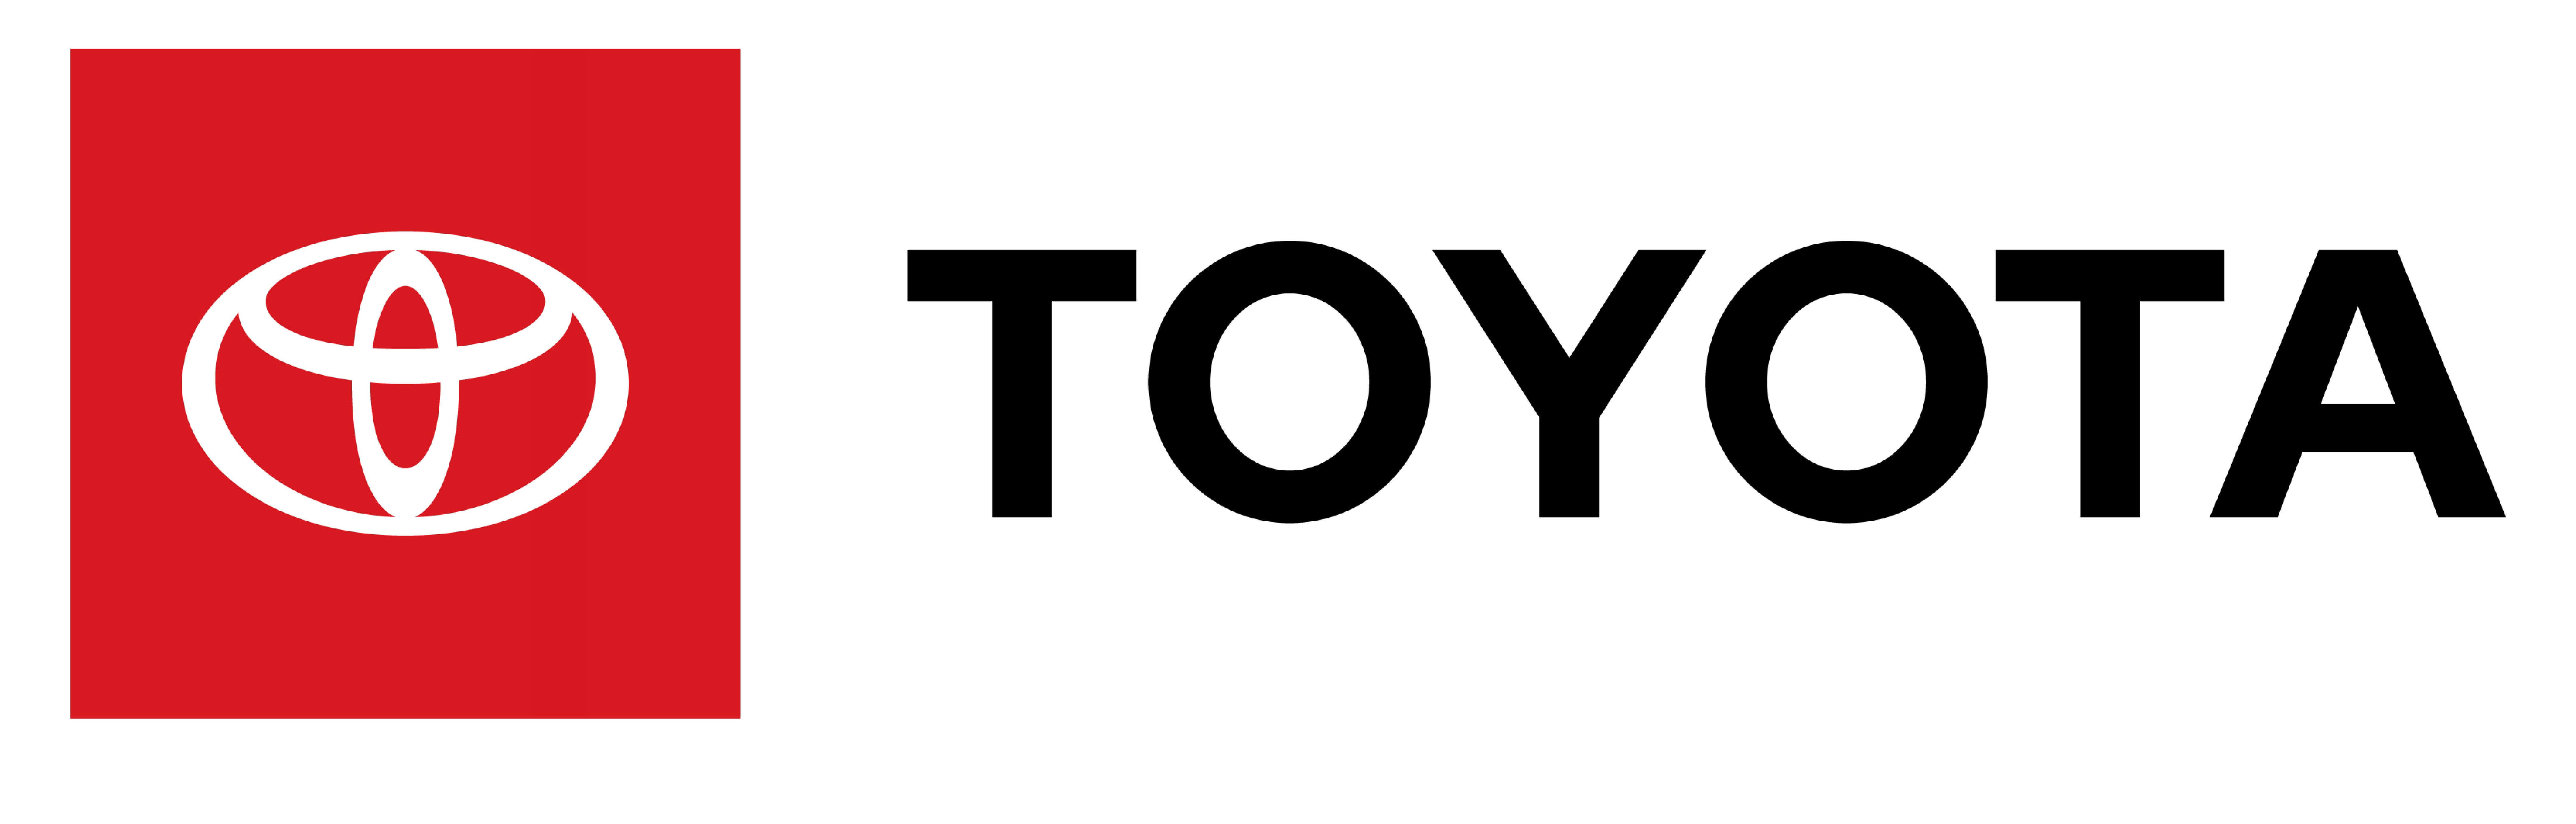 Toyota-Brand-Logo